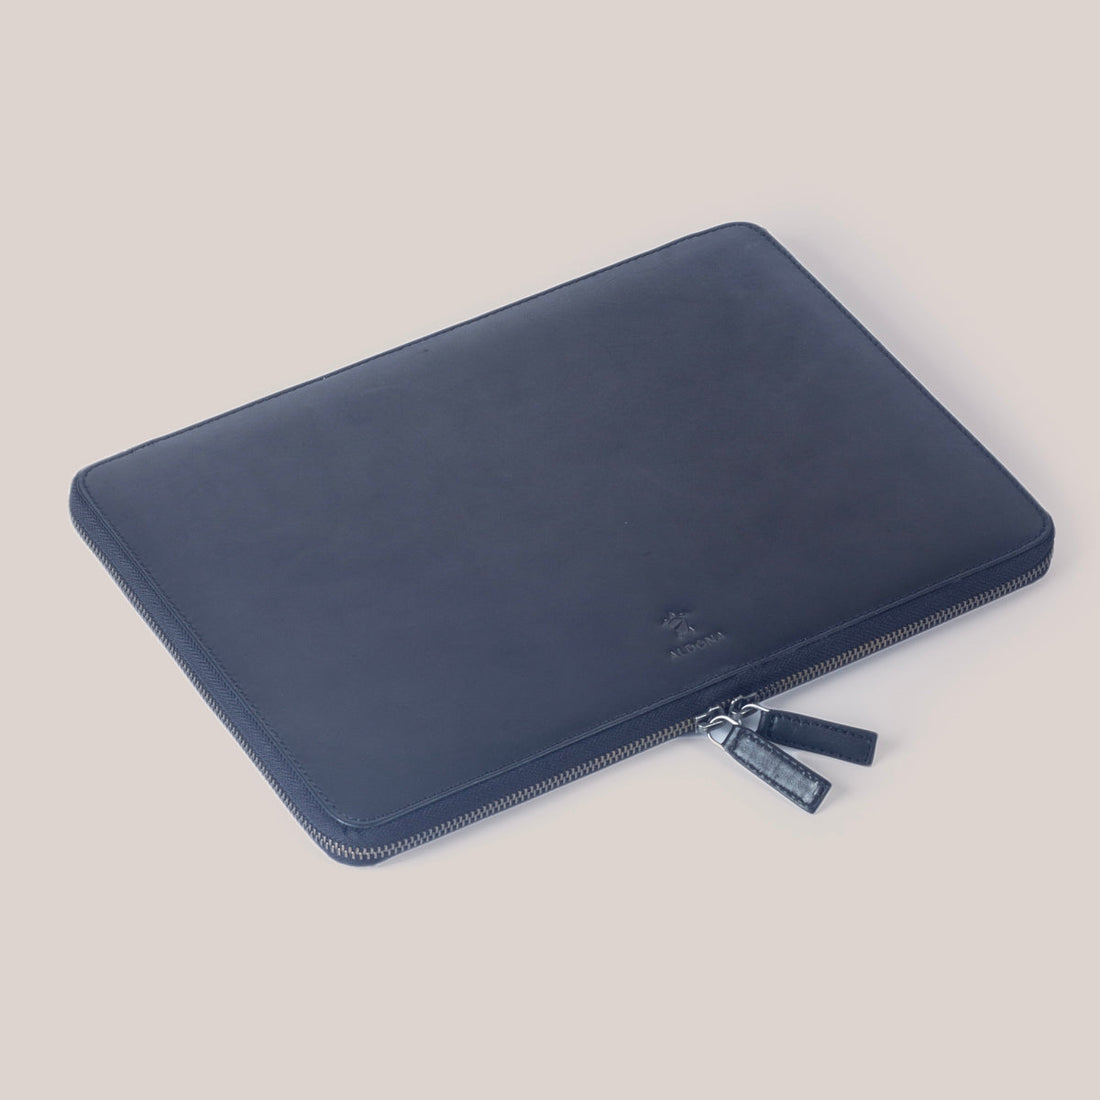 MacBook Pro 16 Zippered Laptop Case - Felt and Tan Crunch